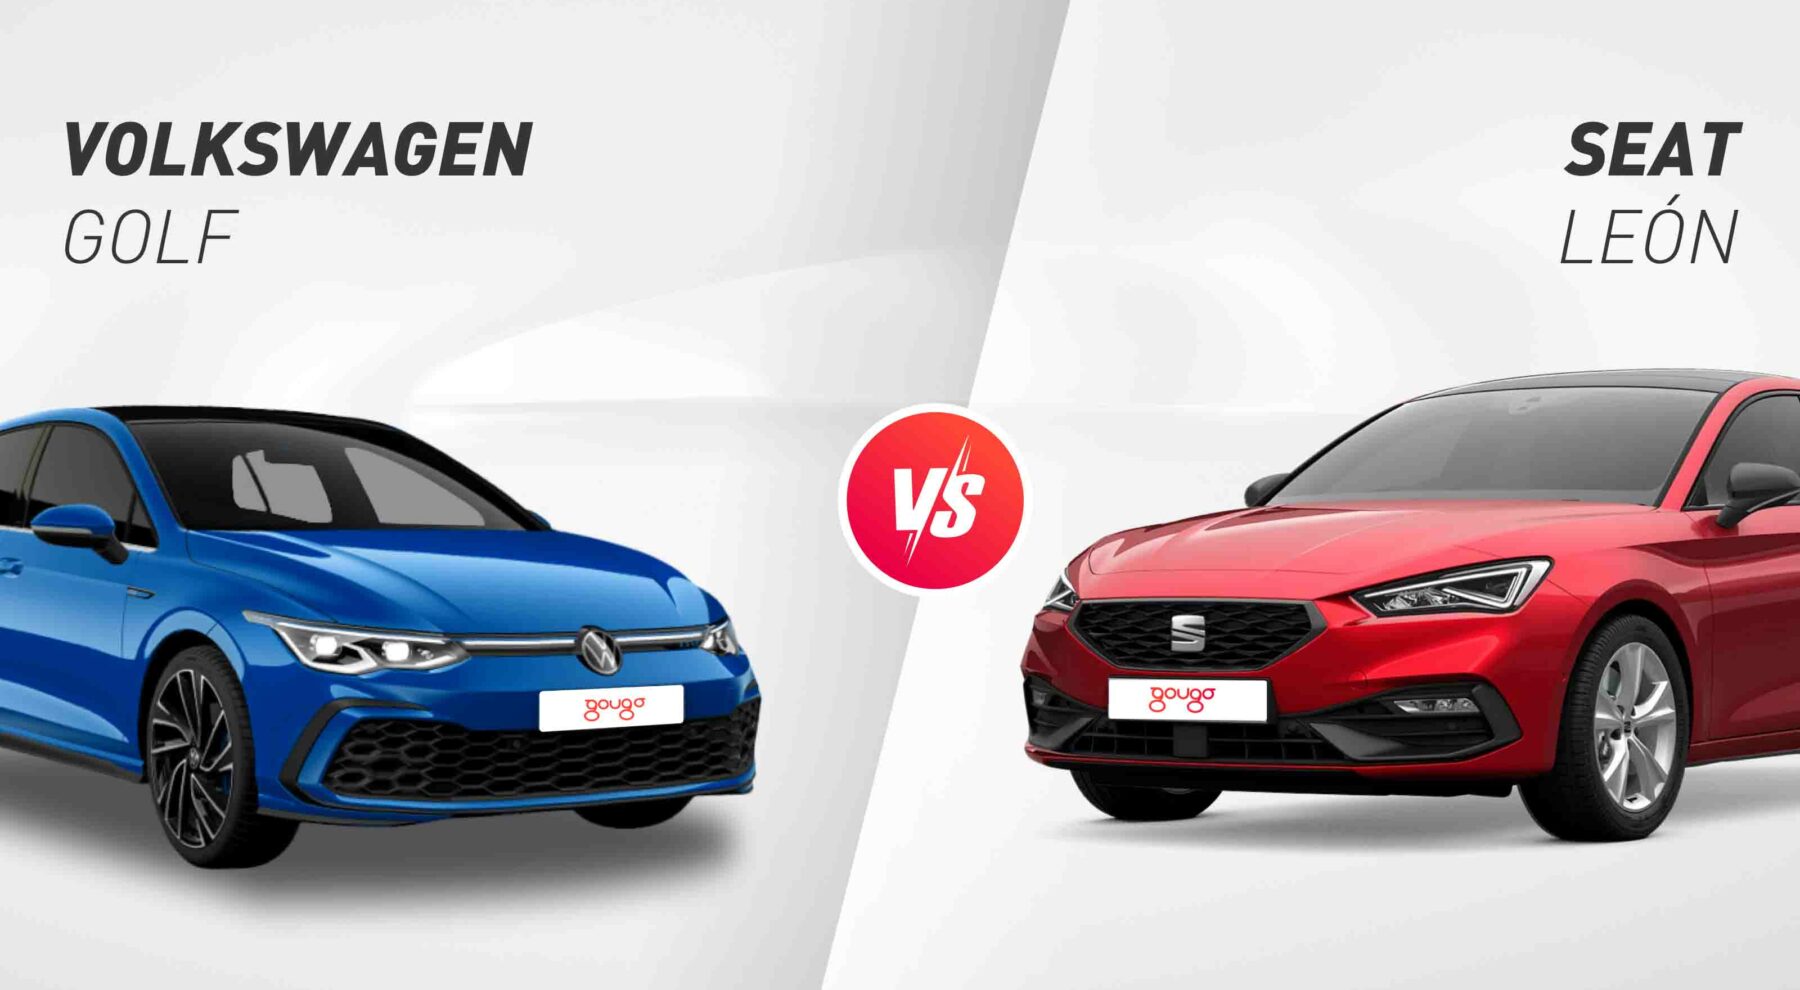 SEAT León vs Volkswagen Golf: ¿qué compacto es mejor?